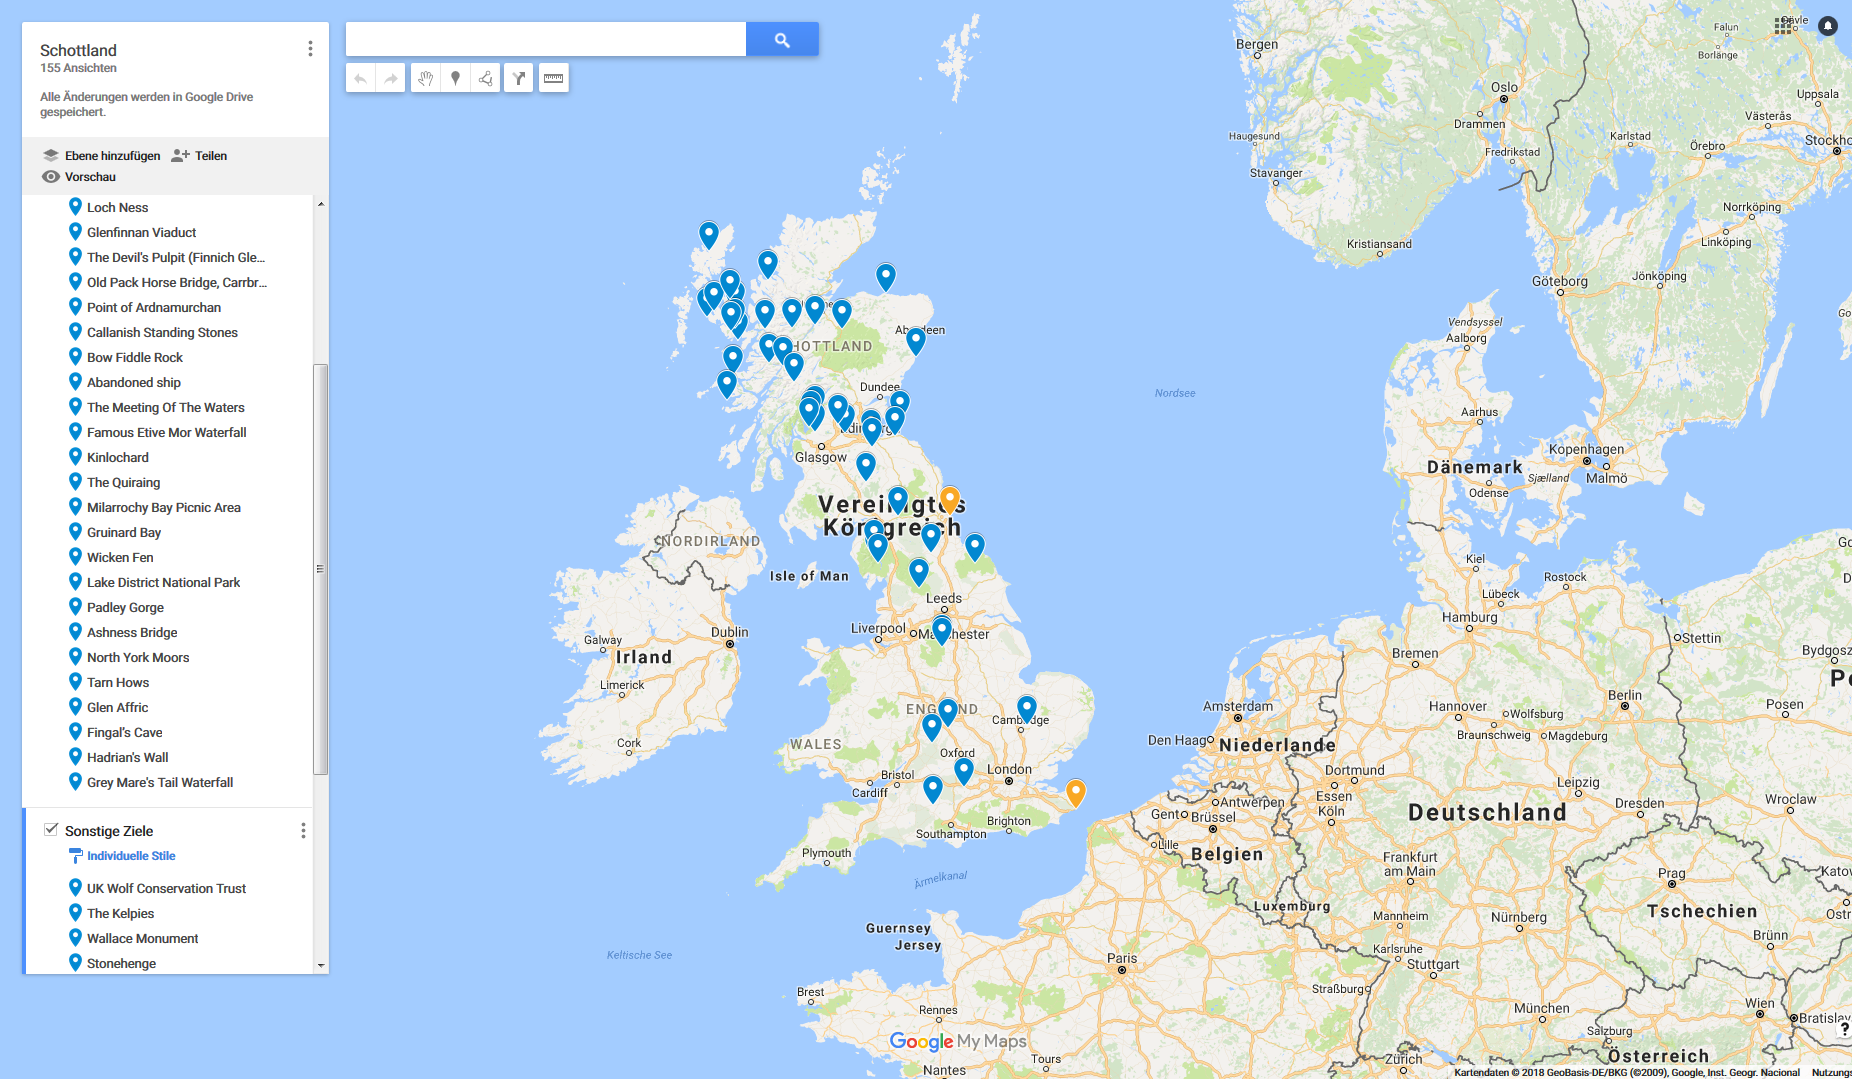 Google-Karte mit MyMaps gestaltet